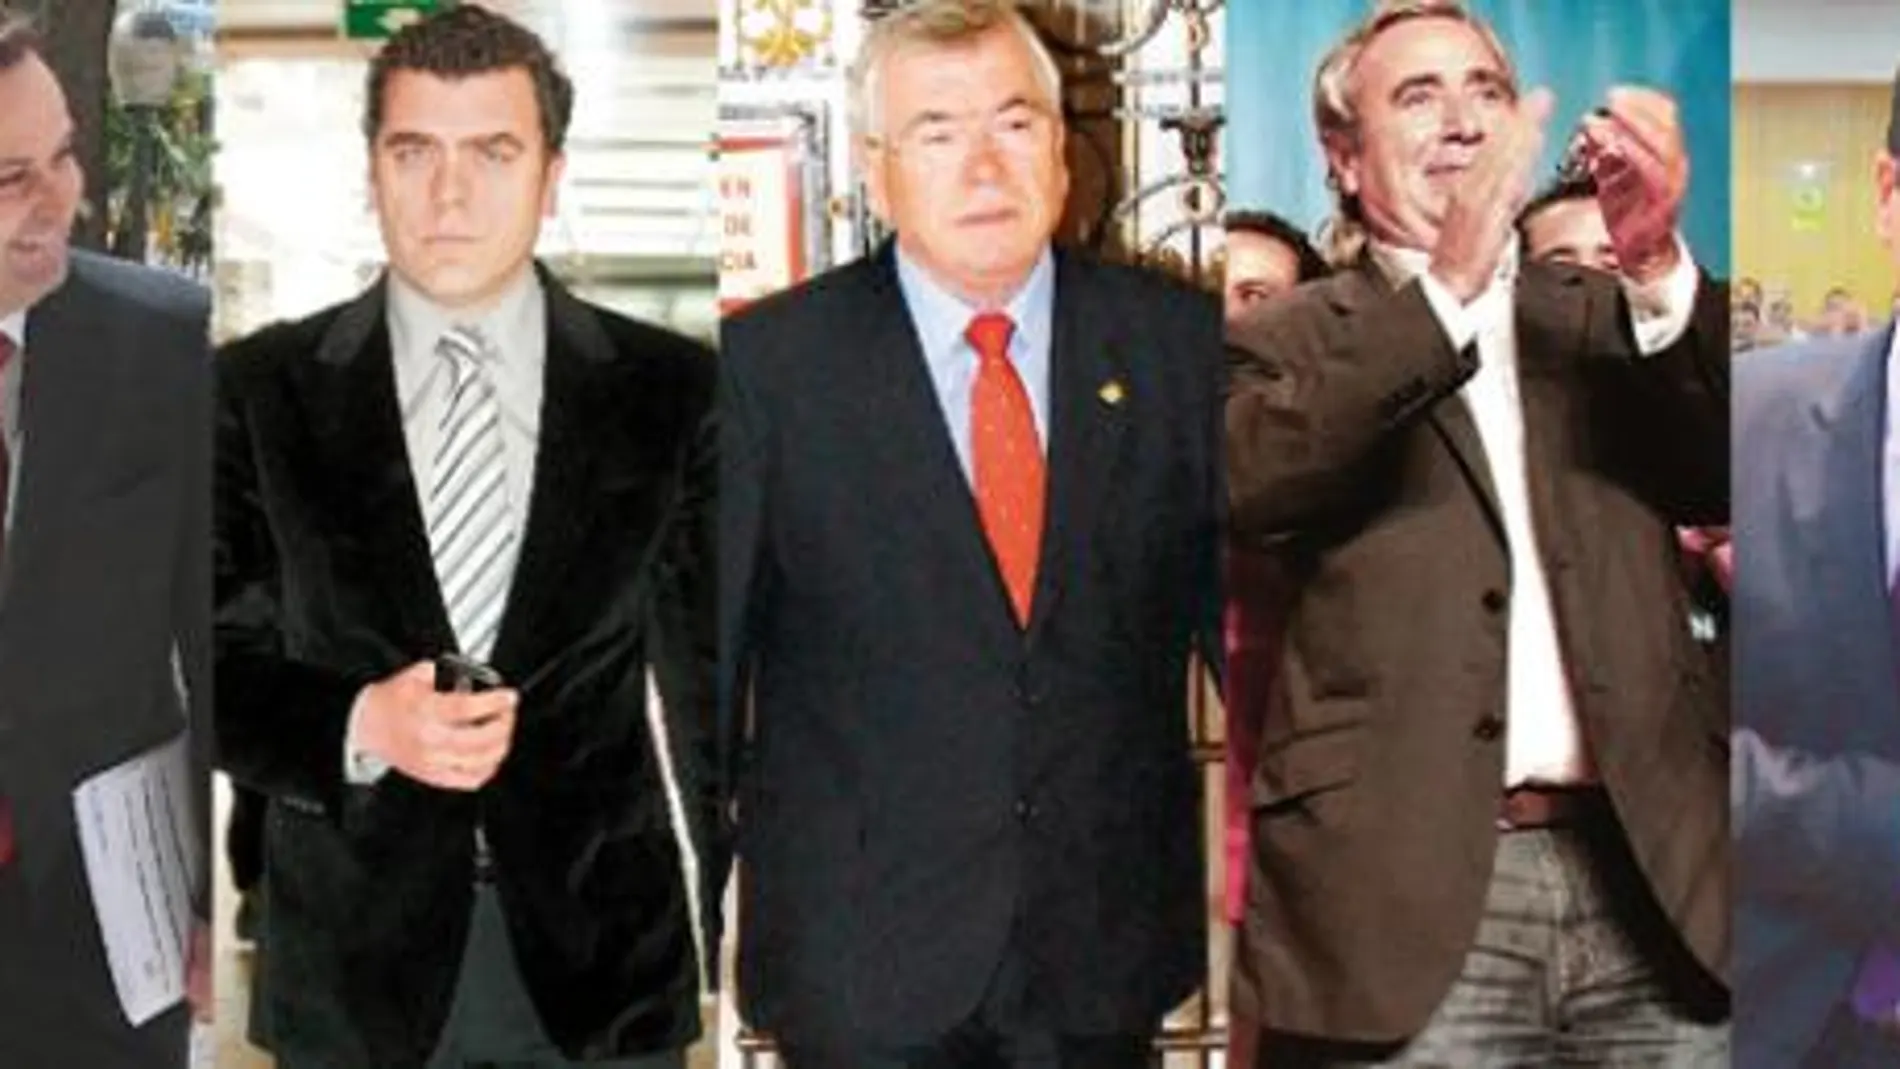 Los regidores de Coslada, Leganés, Getafe, Alcorcón y Pinto (de izquierda a derecha) deben su puesto a gobiernos en coalición con Izquierda Unida